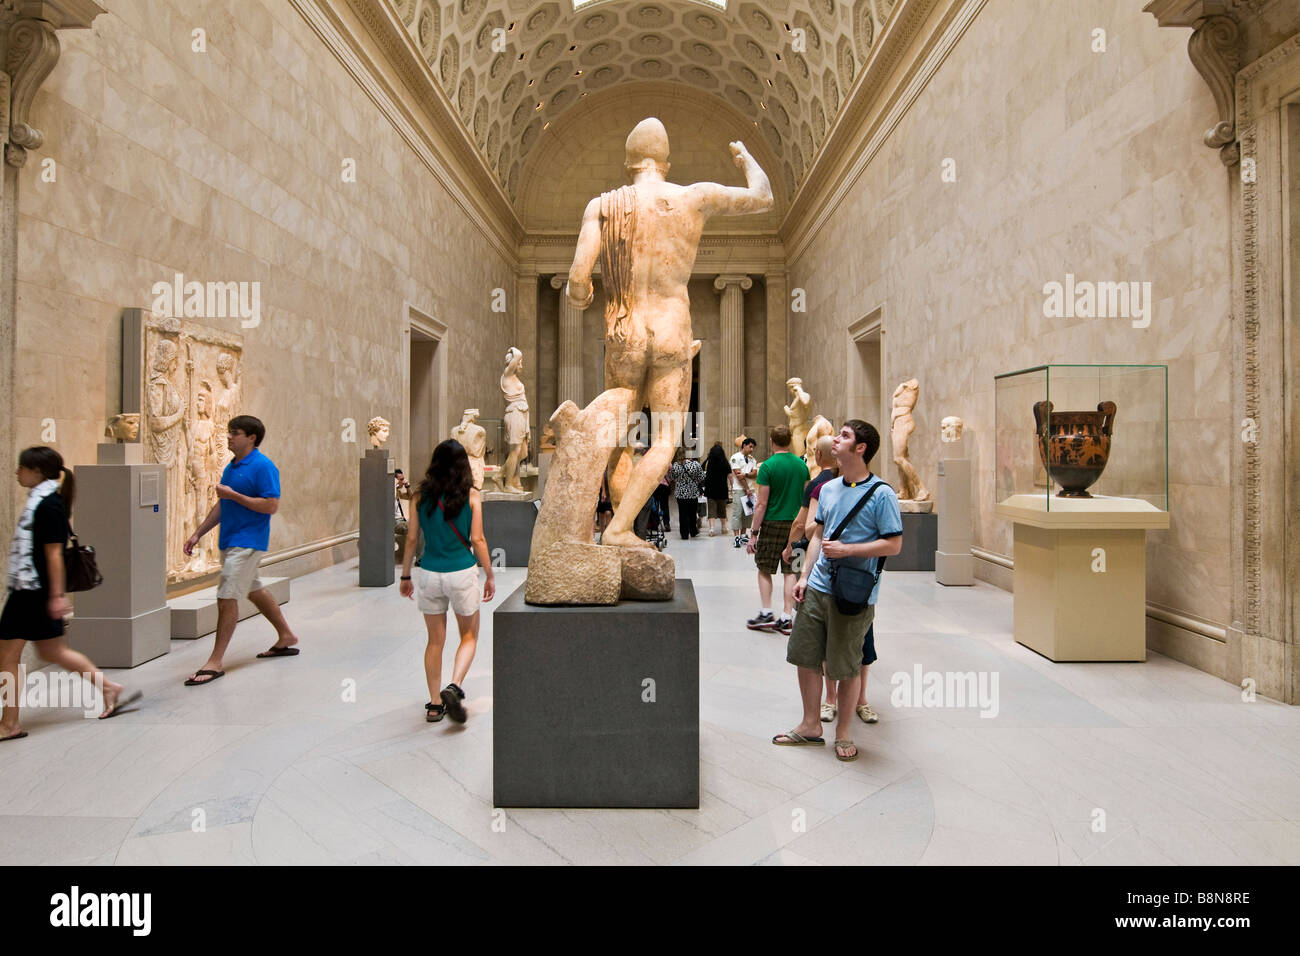 Affichage des visiteurs une exposition de sculpture classique au Metropolitan Museum of Art Banque D'Images